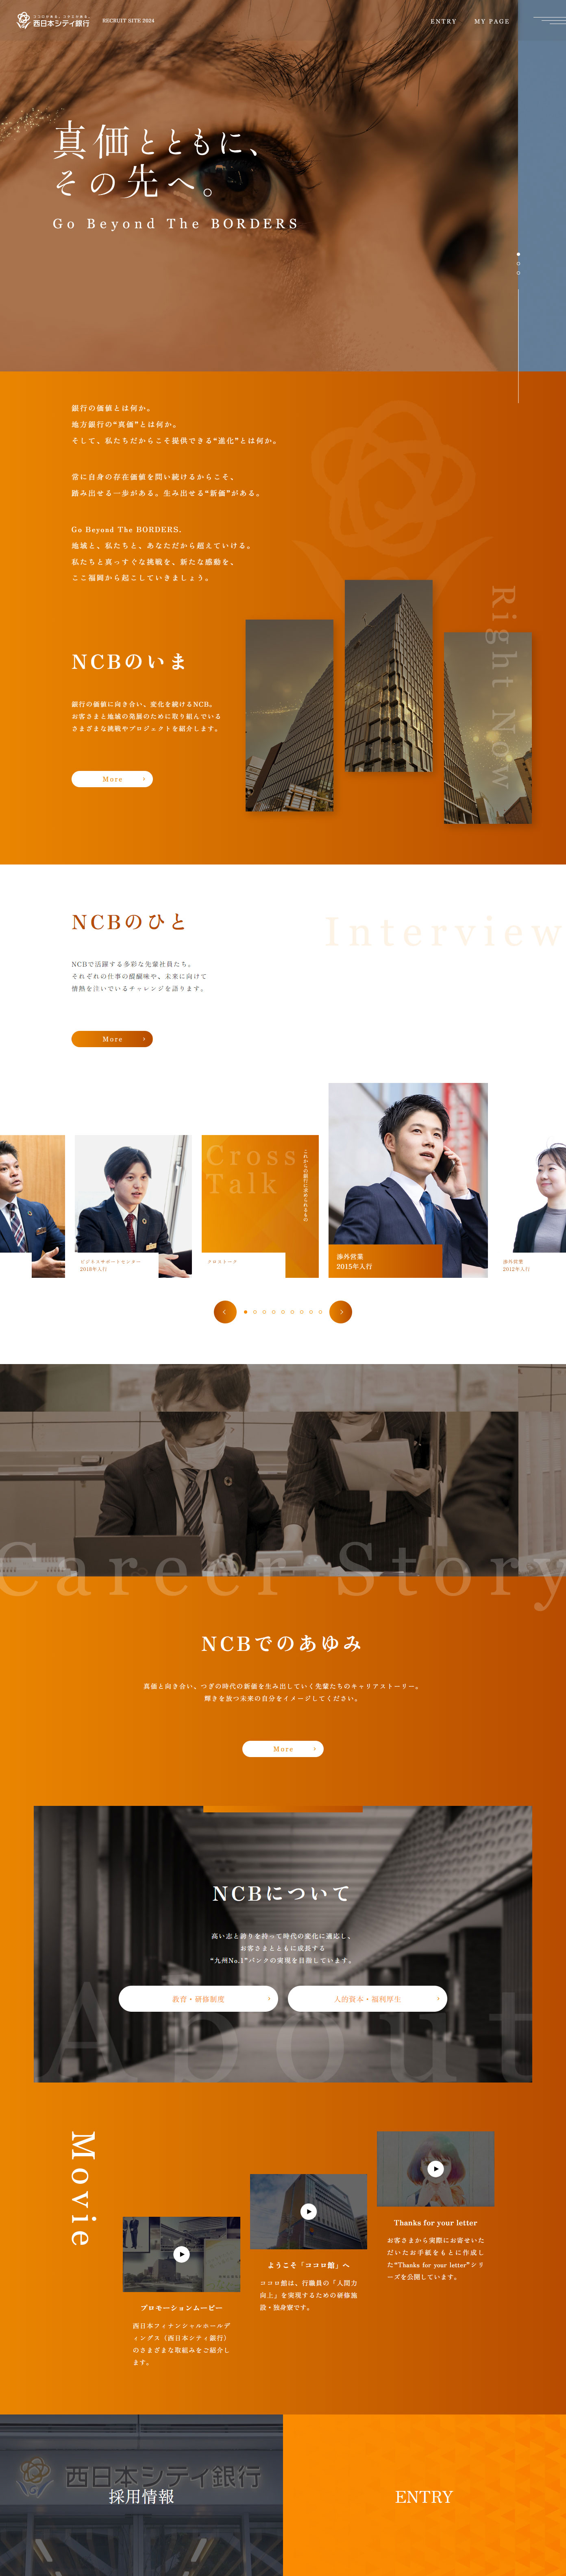 西日本シティ銀行 新卒採用サイト_pc_1